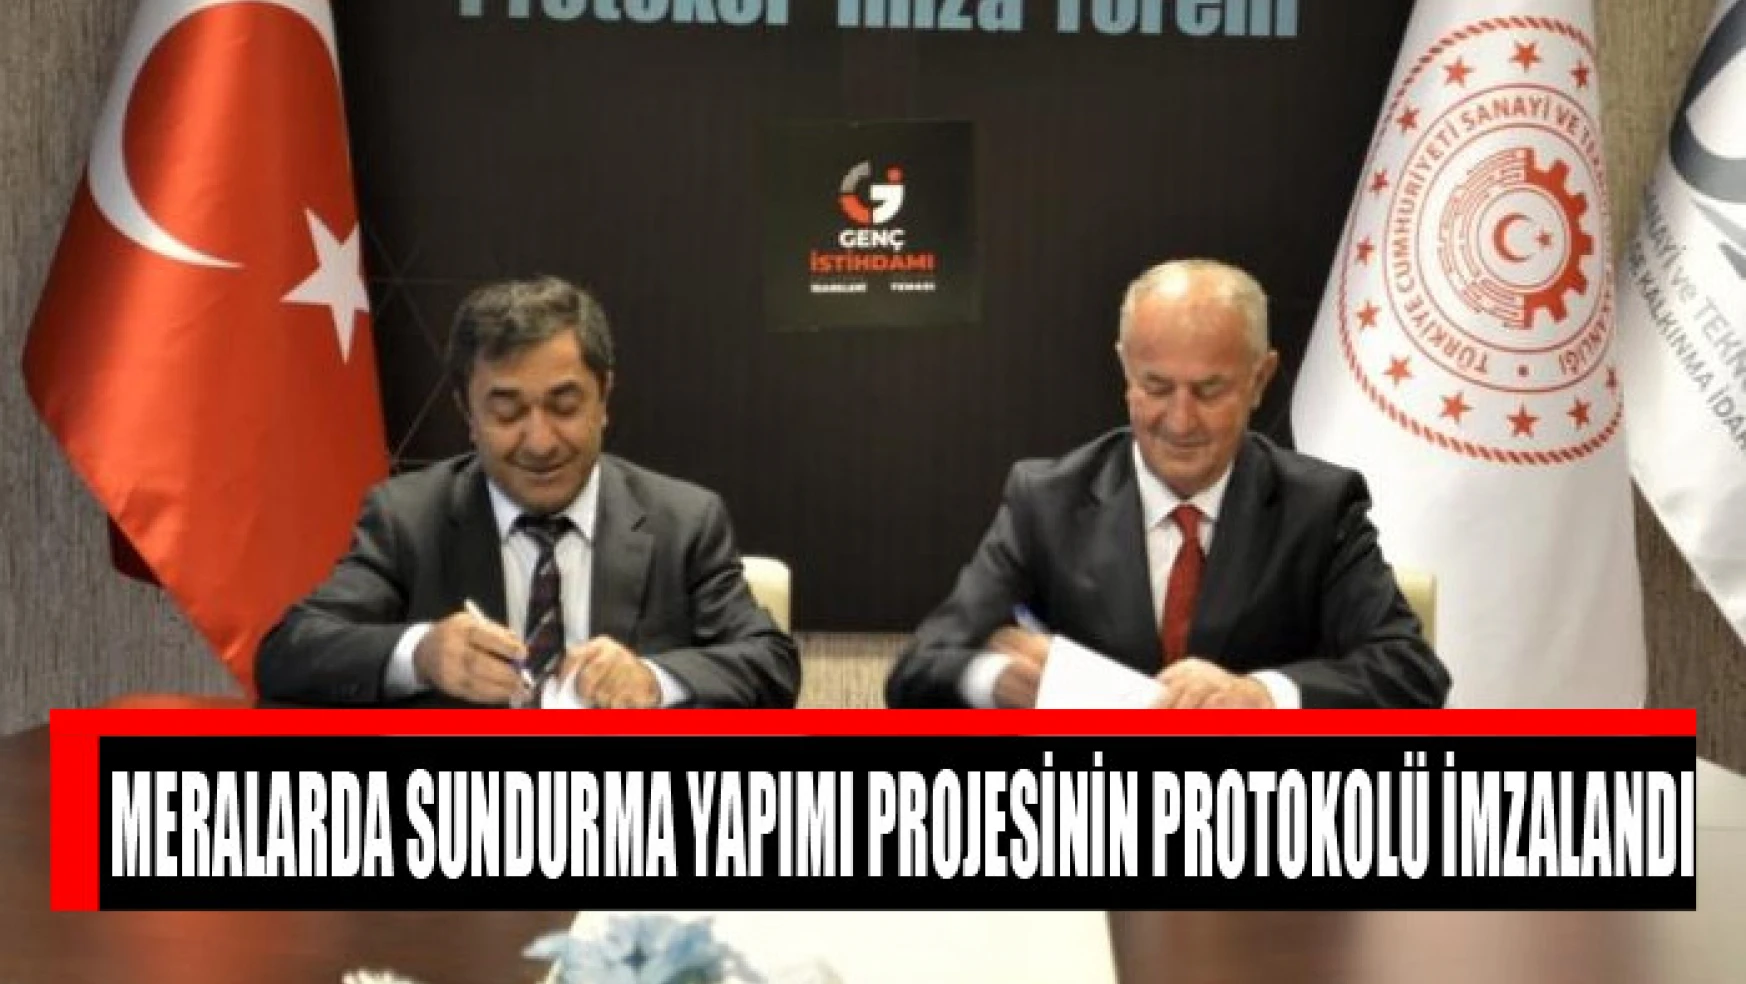 Meralarda Sundurma Yapımı projesinin protokolü imzalandı